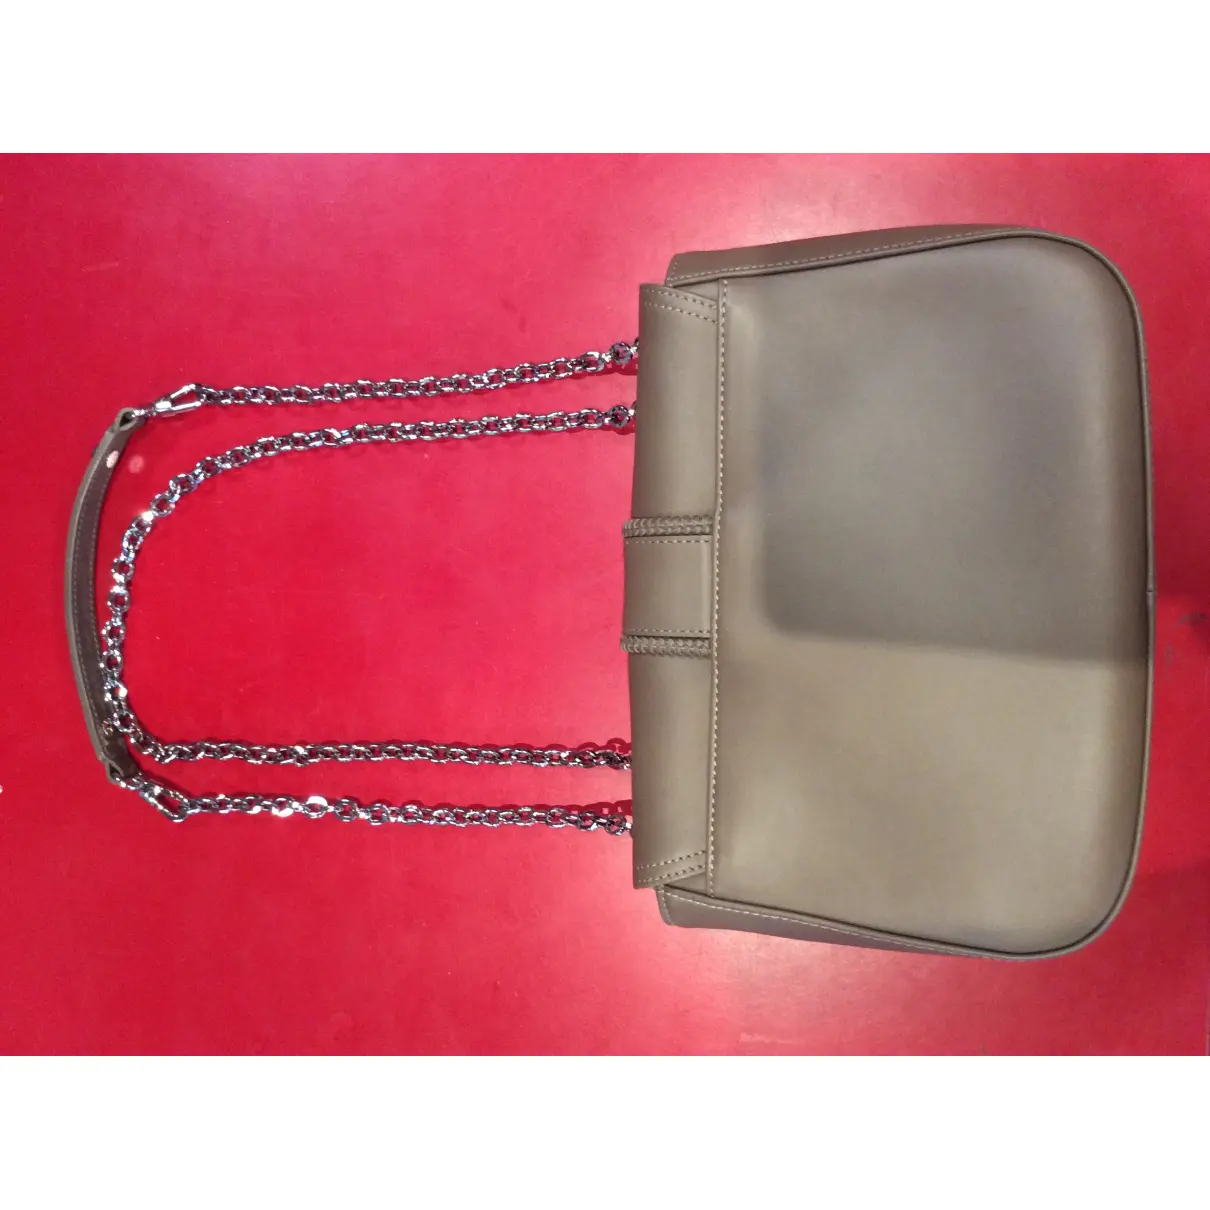 Buy Longchamp Amazone leather handbag online